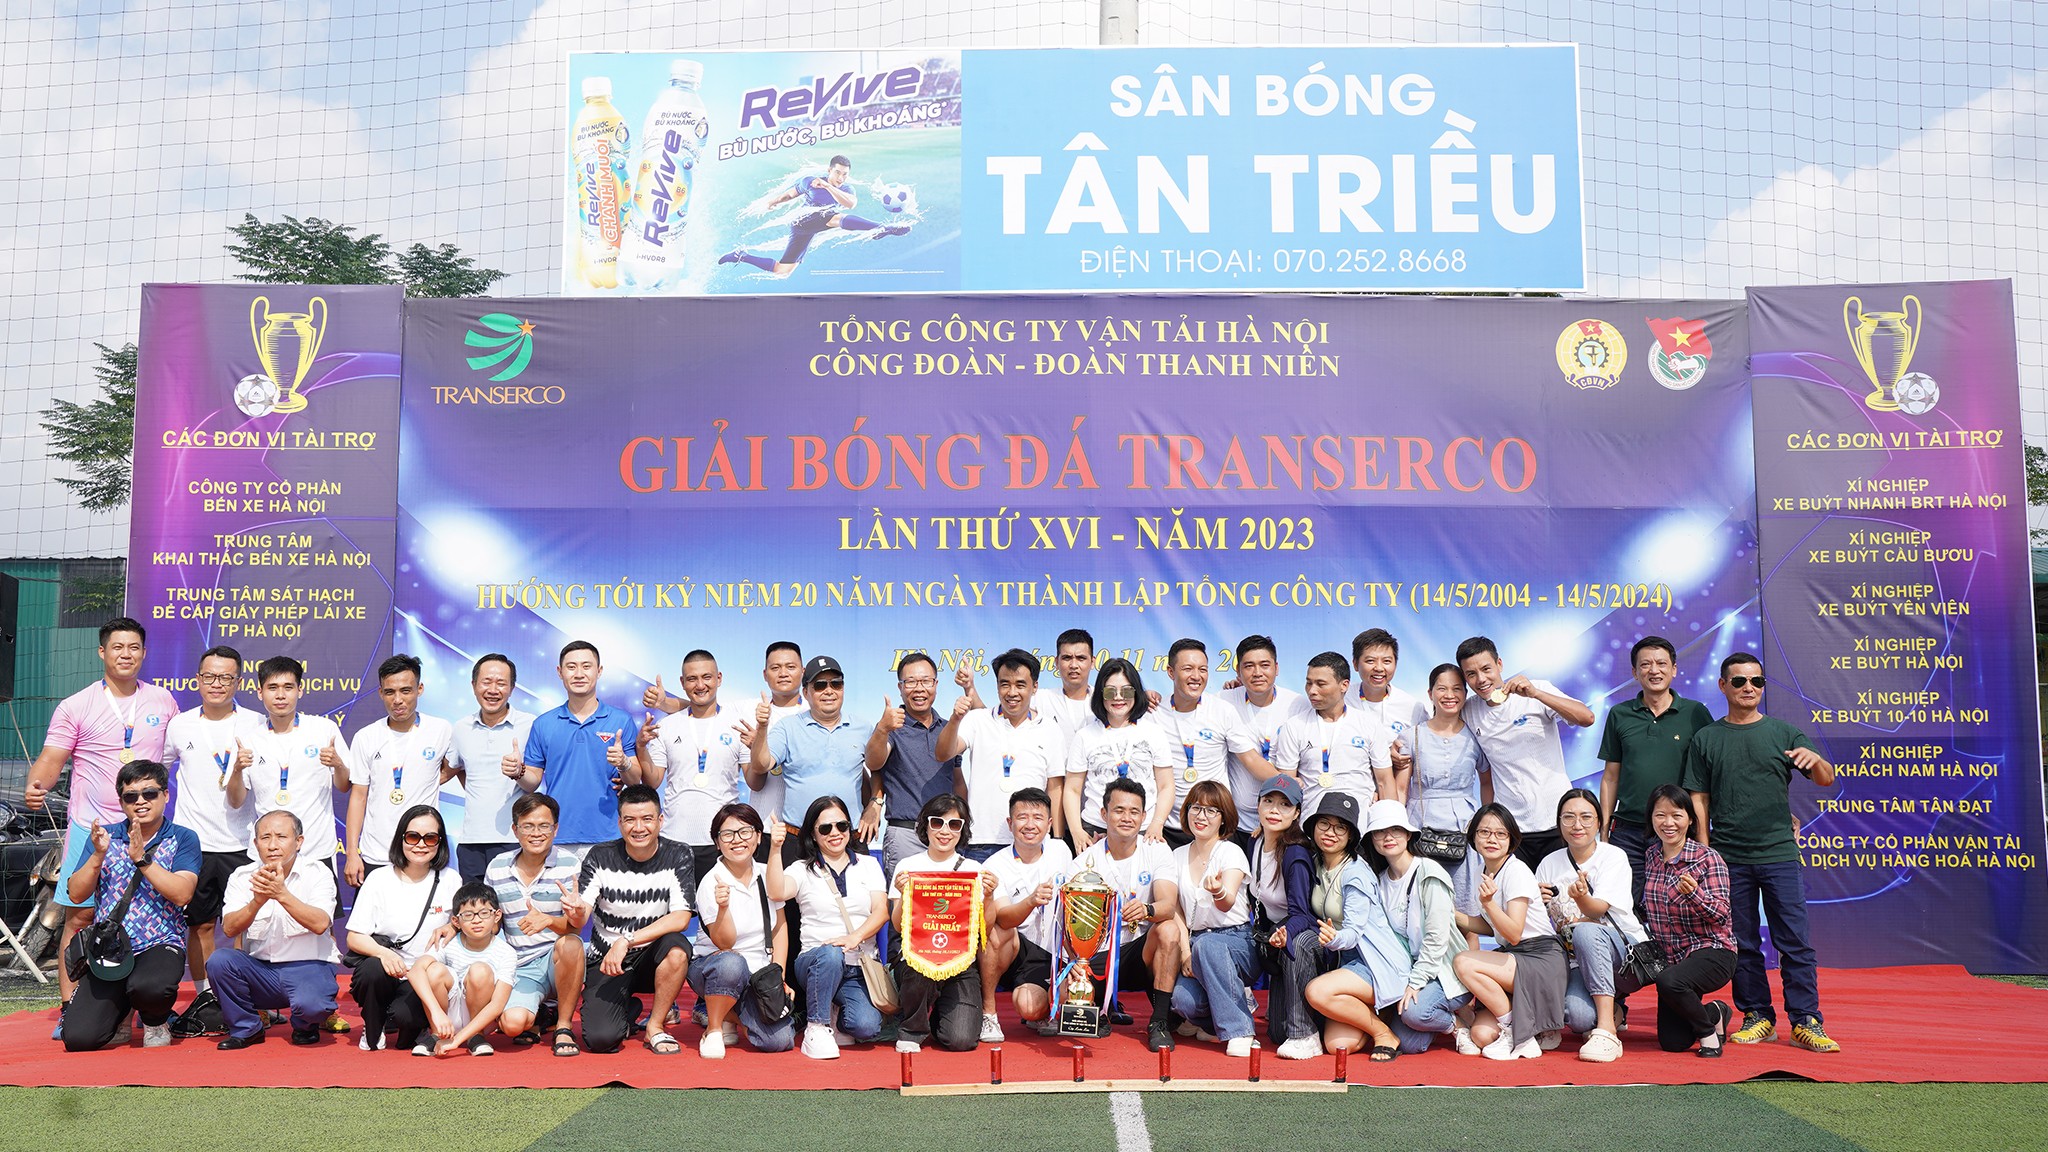 Sau khi bỏ lỡ mùa giải 2022, Đội Công ty khai thác điểm đỗ xe Hà Nội đã trở lại ngoại mục với chức vô địch năm 2023